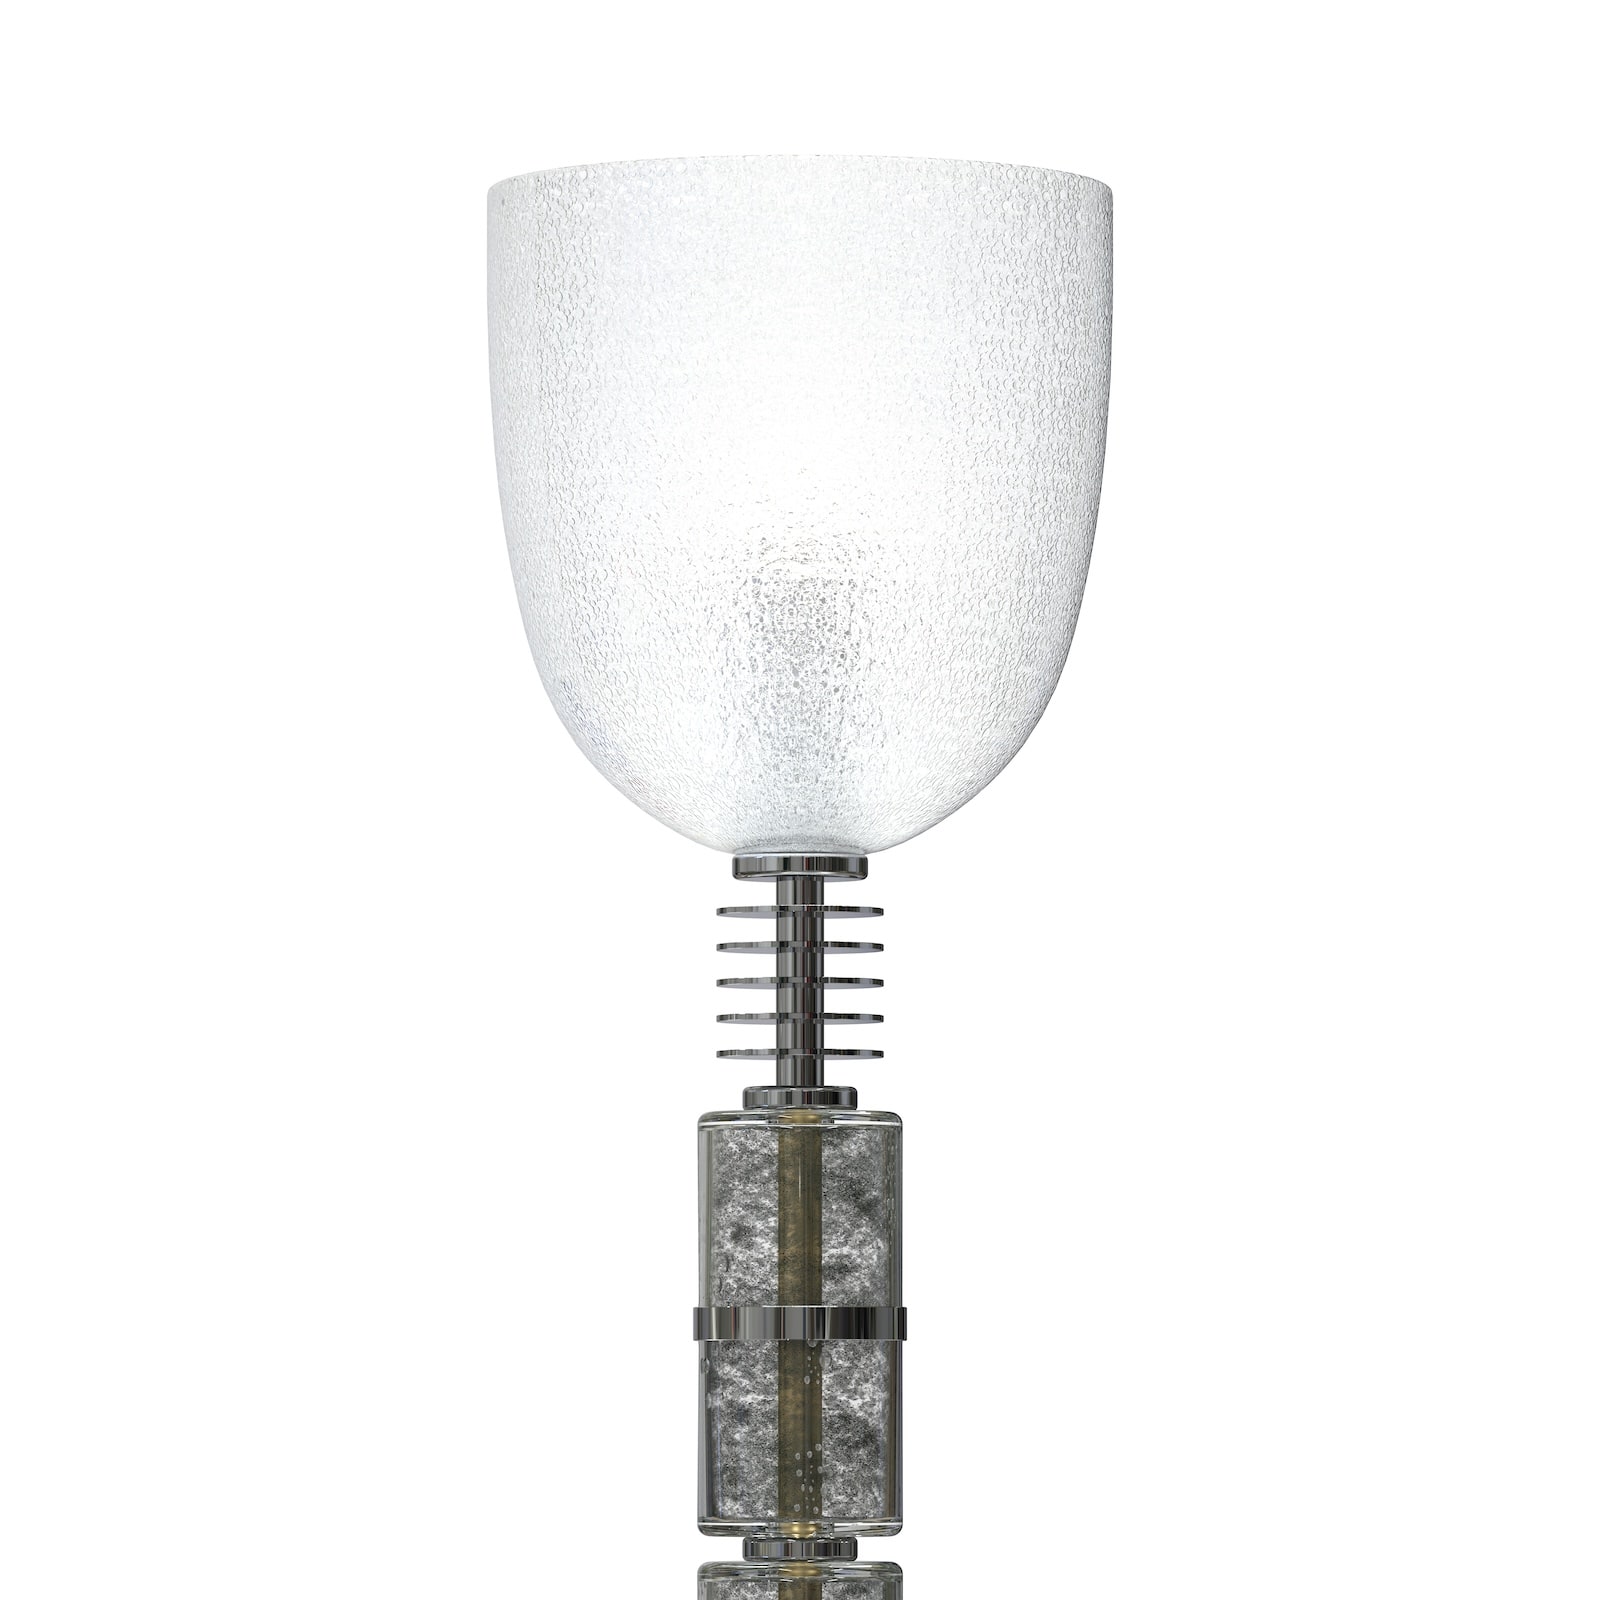 Murano Glass modern floor lamp for luxury living room